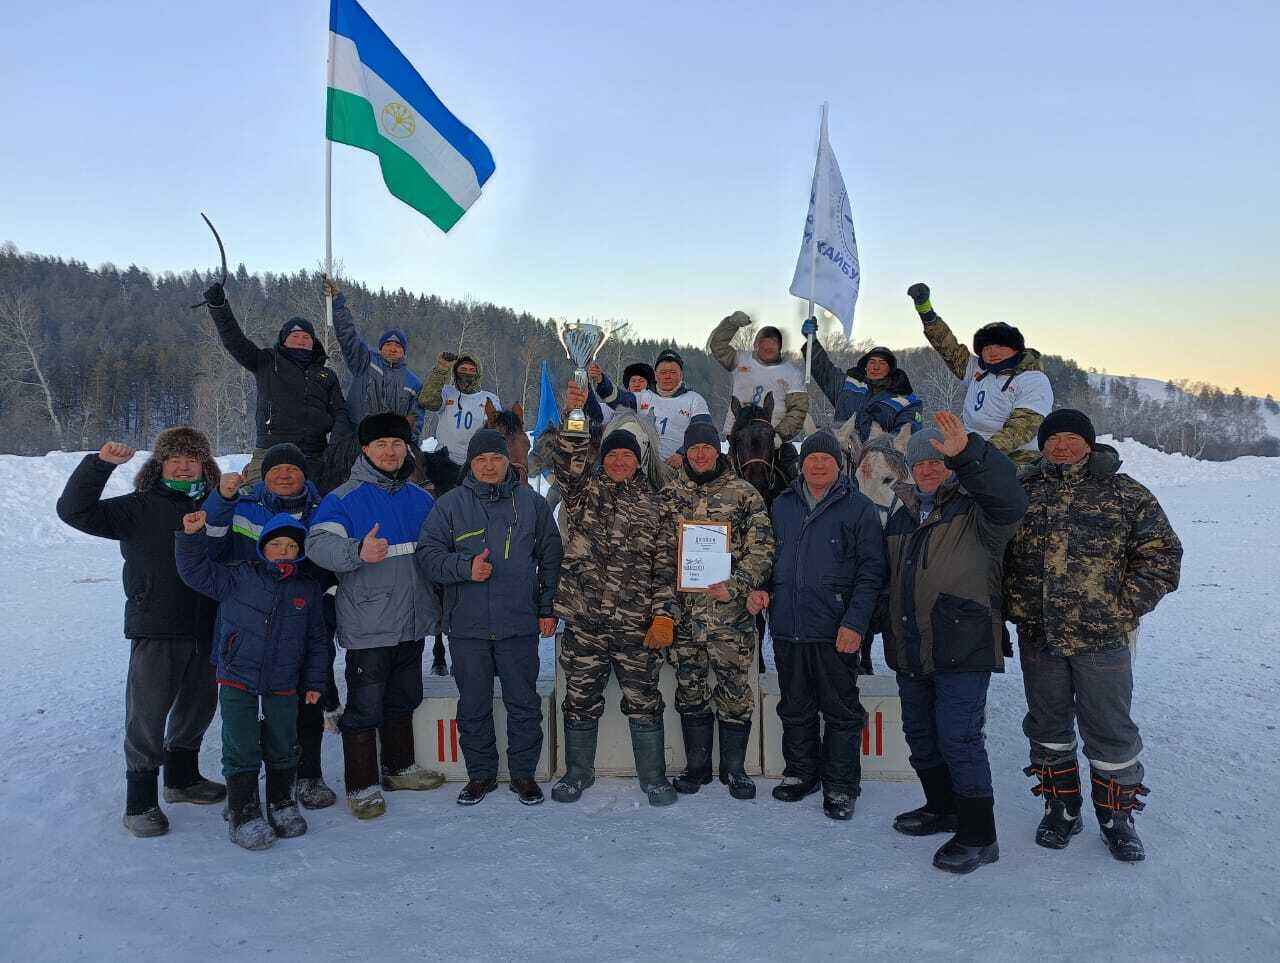 Команда конников Хайбуллинского района одержала победу в "Зимних играх Урал-батыра" в Бурзянском районе